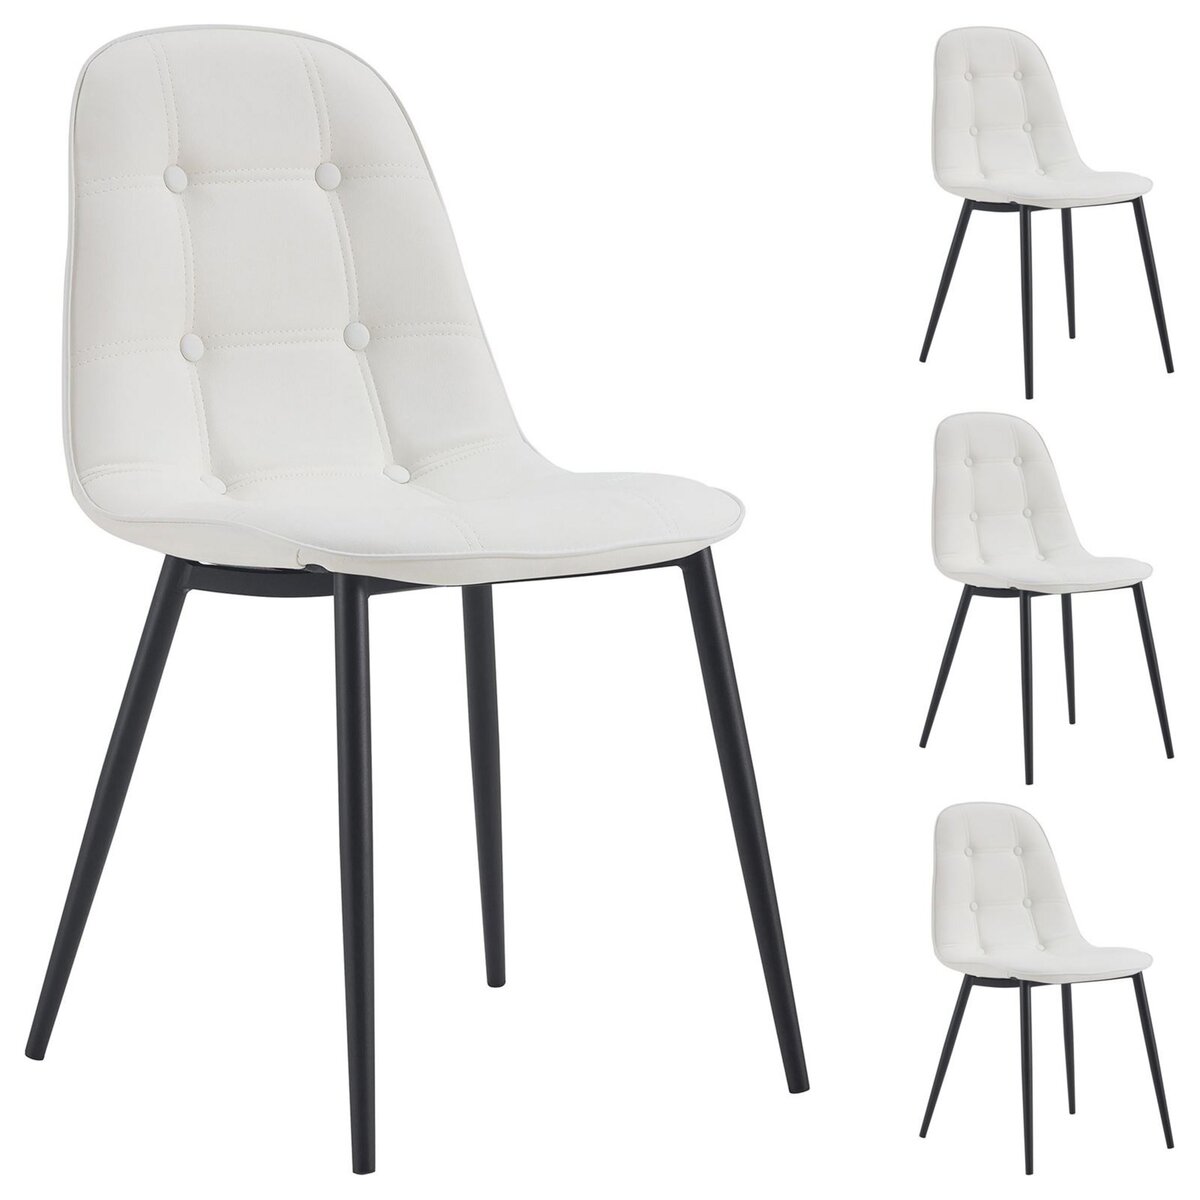 IDIMEX Lot de 4 chaises ALVARO pour salle à manger ou cuisine avec 4 pieds  en métal noir et assise capitonnée, revêtement synthétique blanc pas cher 